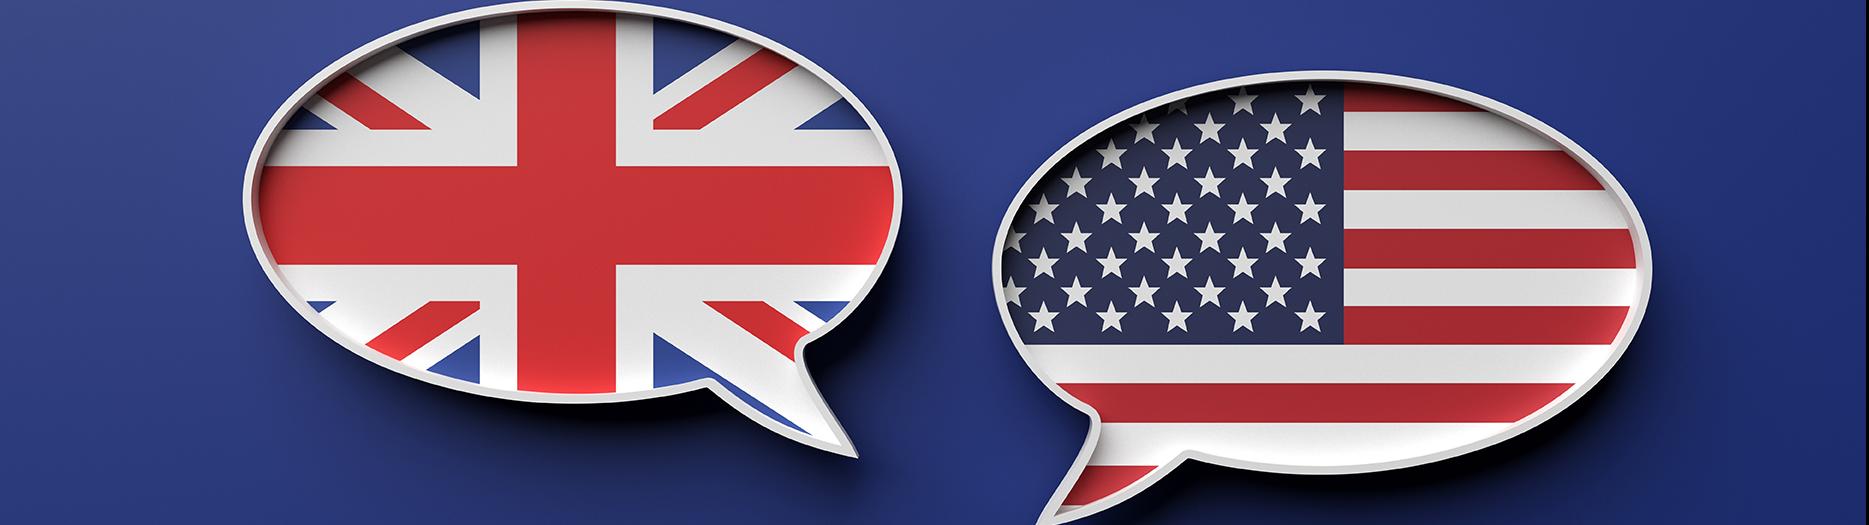 bulles de dialogues avec drapeaux anglais et américain